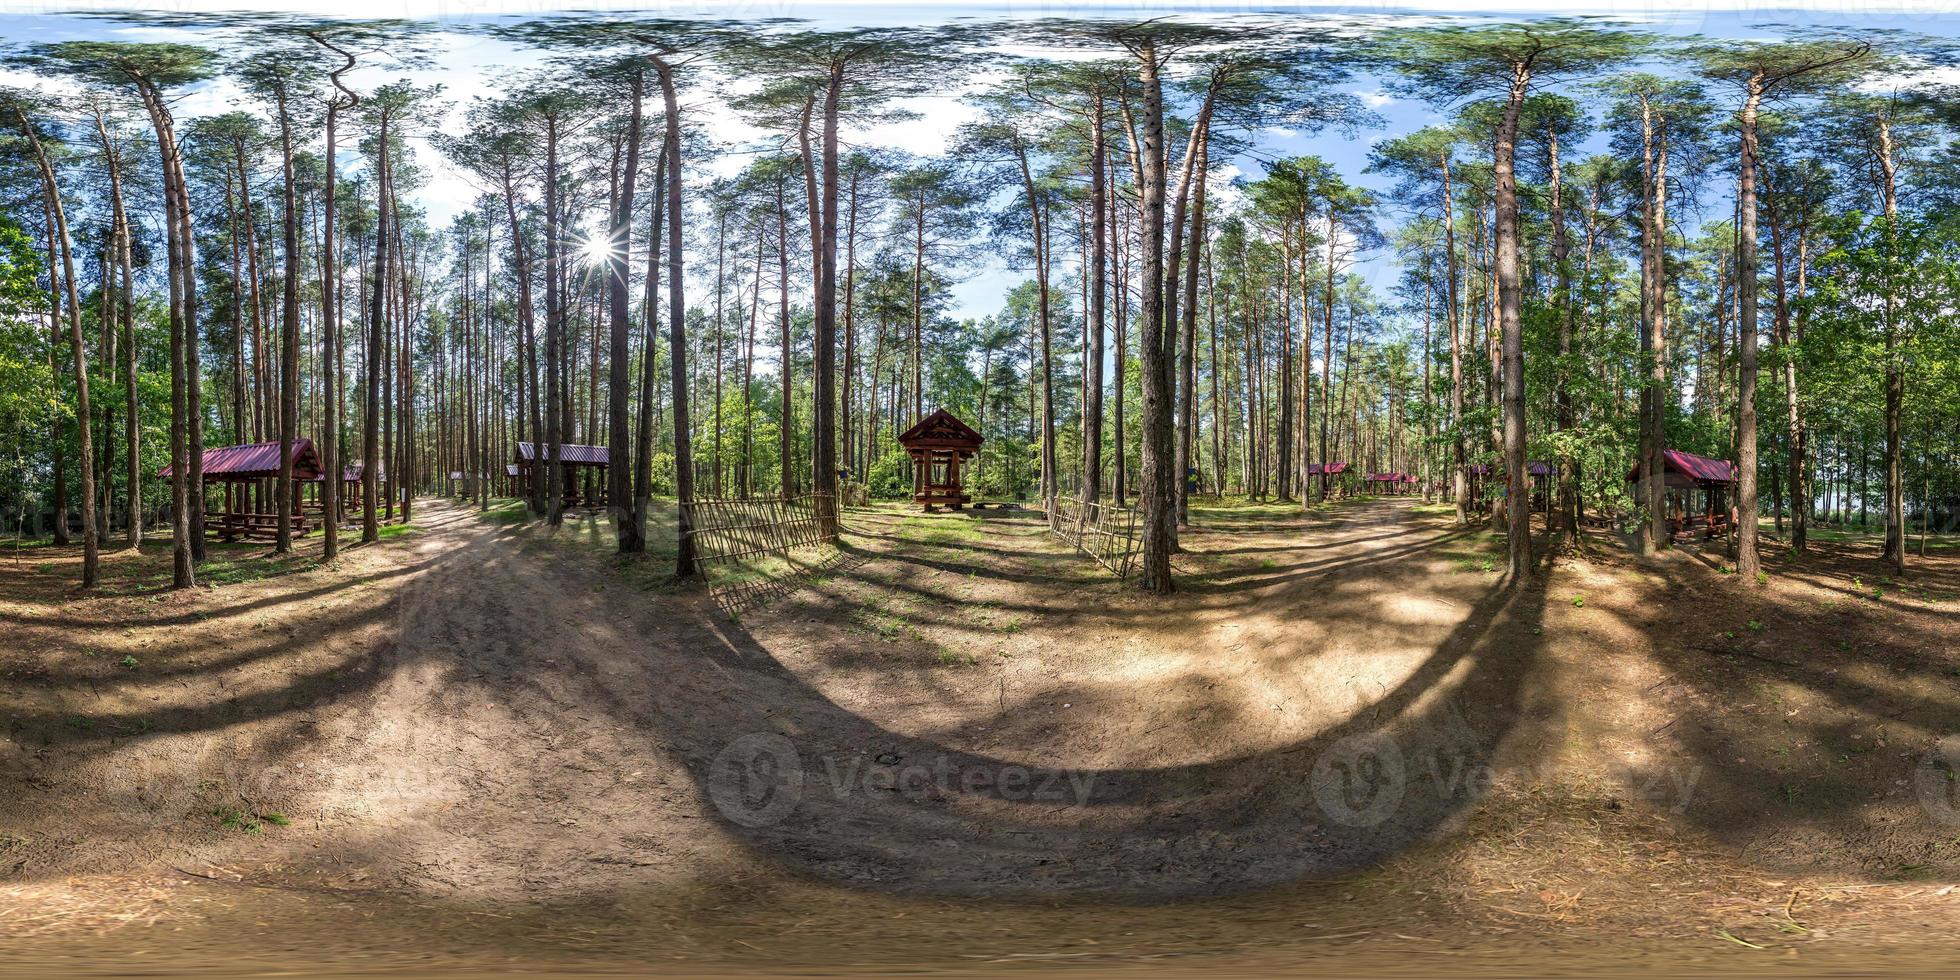 panorama hdri esférico completo sem costura visão de ângulo de 360 graus em caramanchões de acampamento de madeira com todas as conveniências em uma floresta de pinheiros em projeção equirretangular com zênite e nadir, para conteúdo vr ar foto